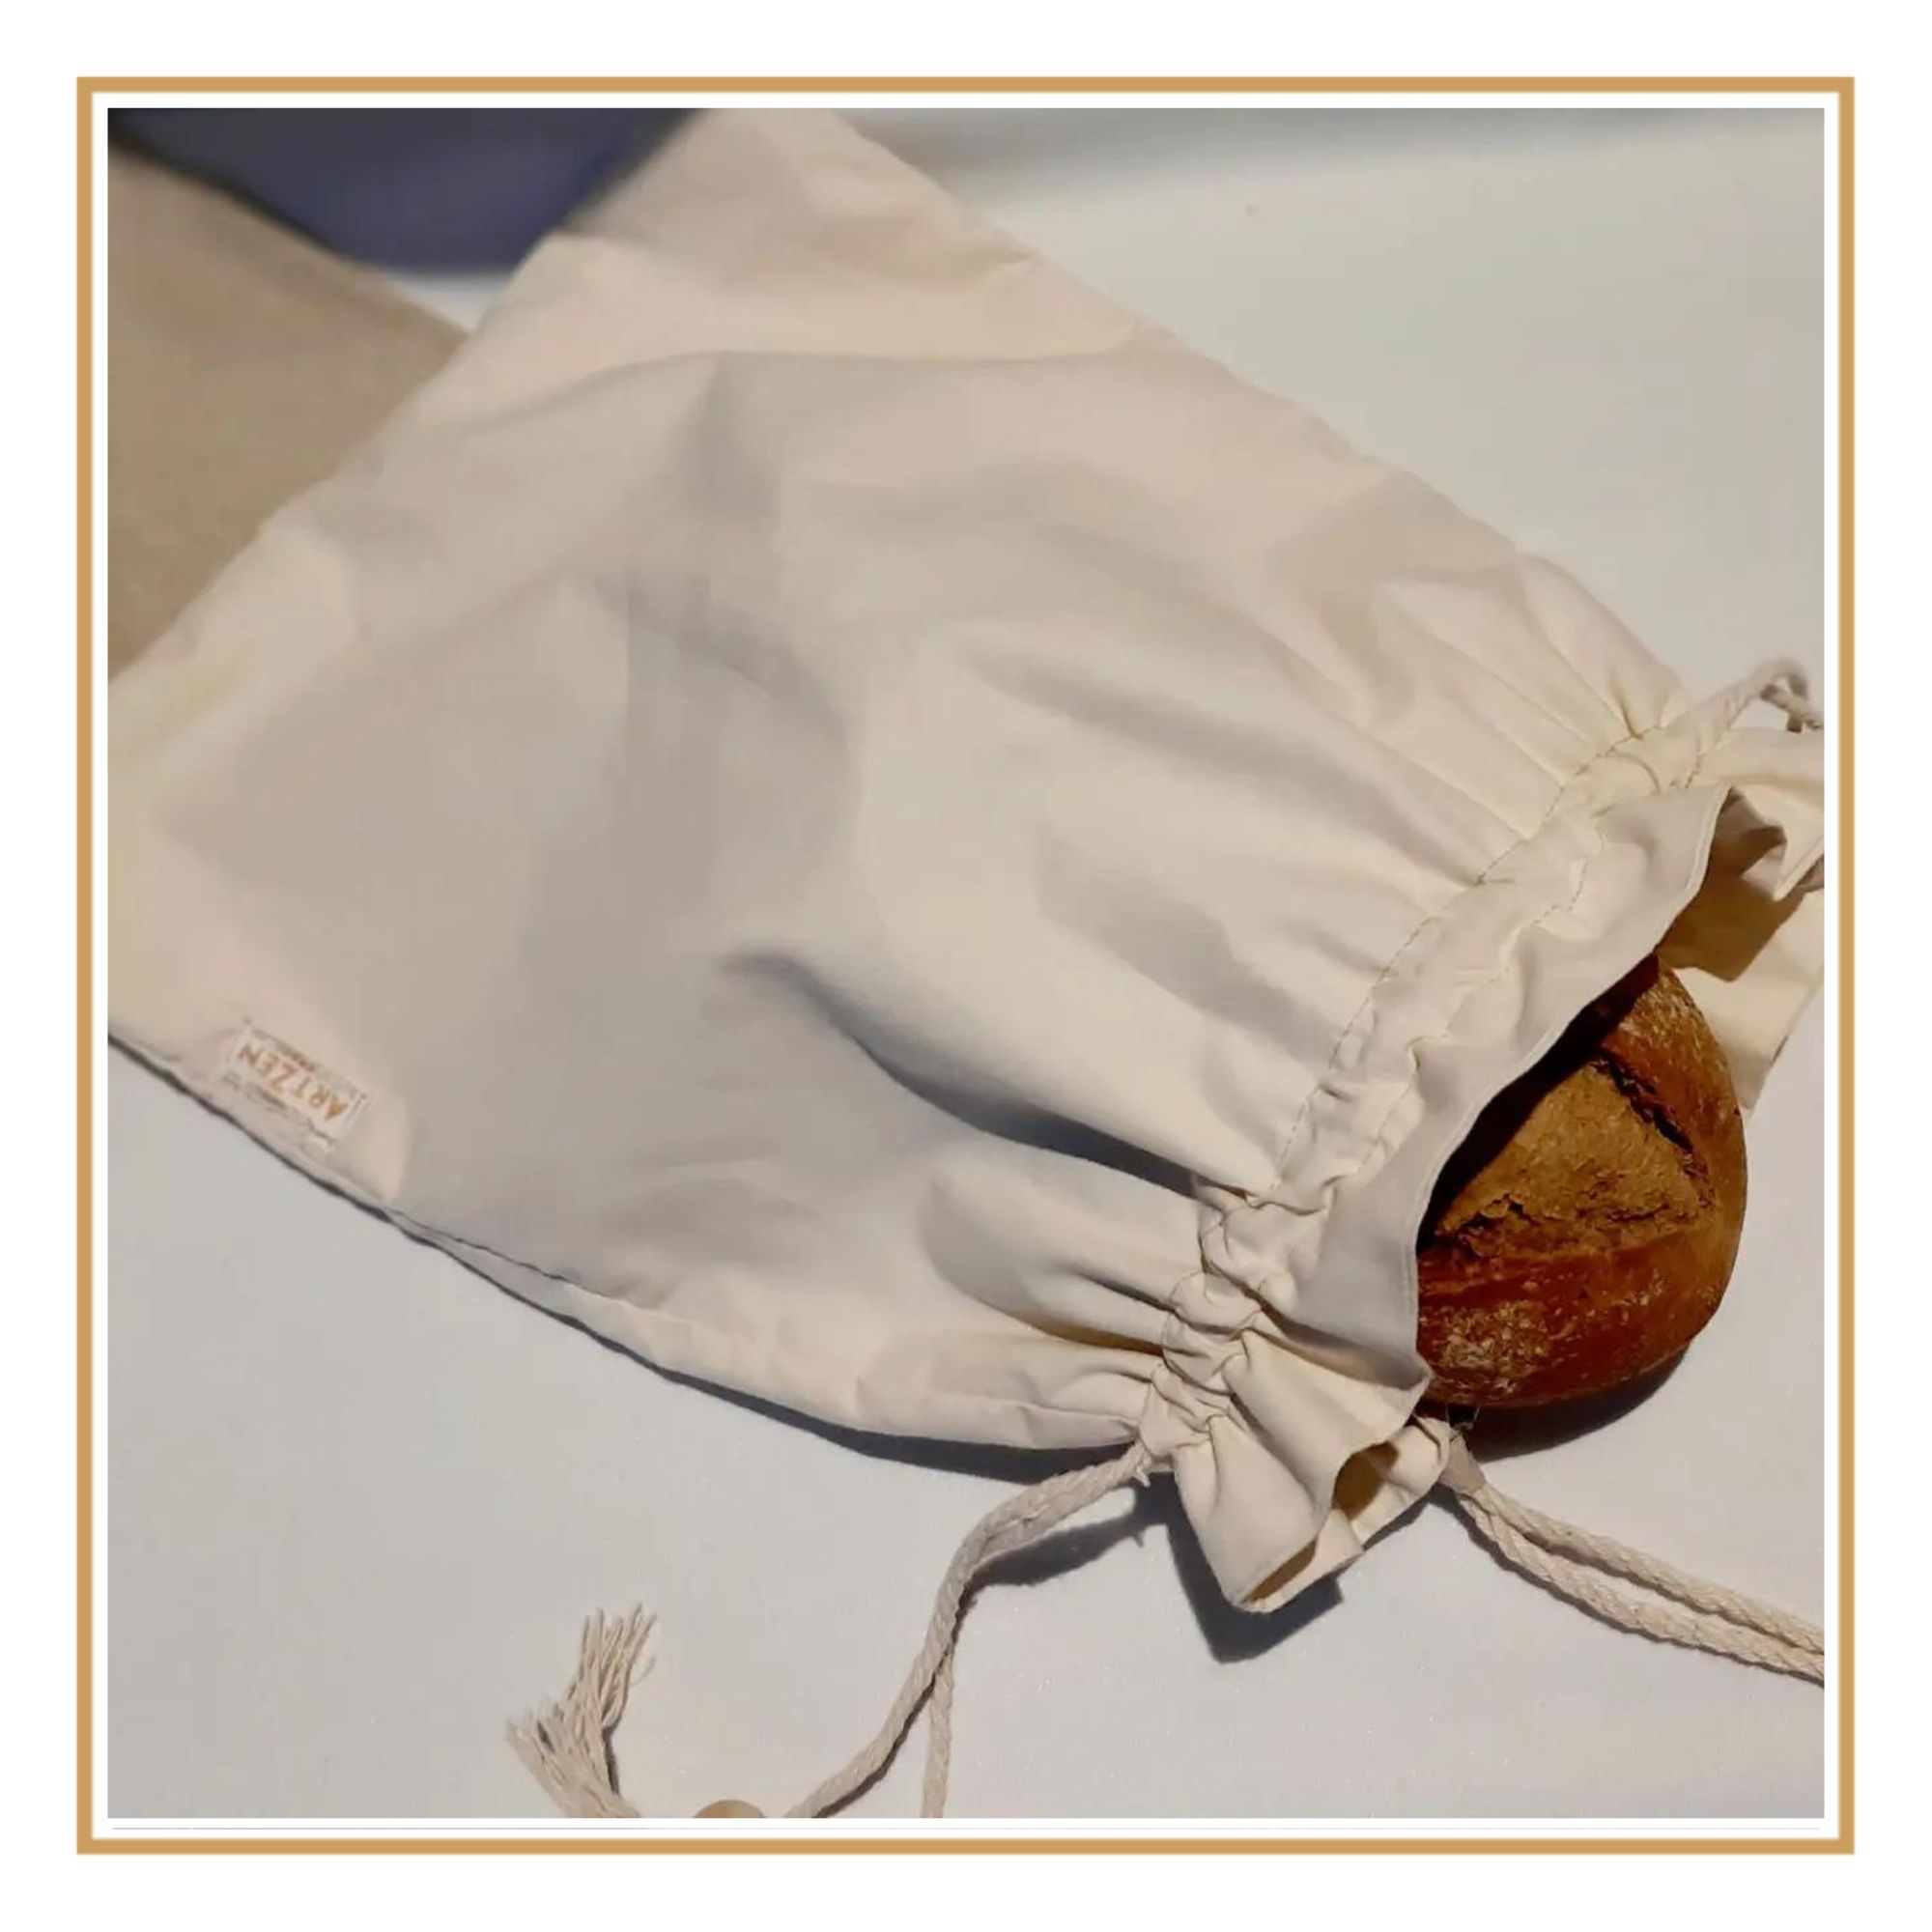 Ezydka 2 Piezas Bolsa Pan, 38 × 31 cm Bolsas de Pan de Tela, Bolsa pan